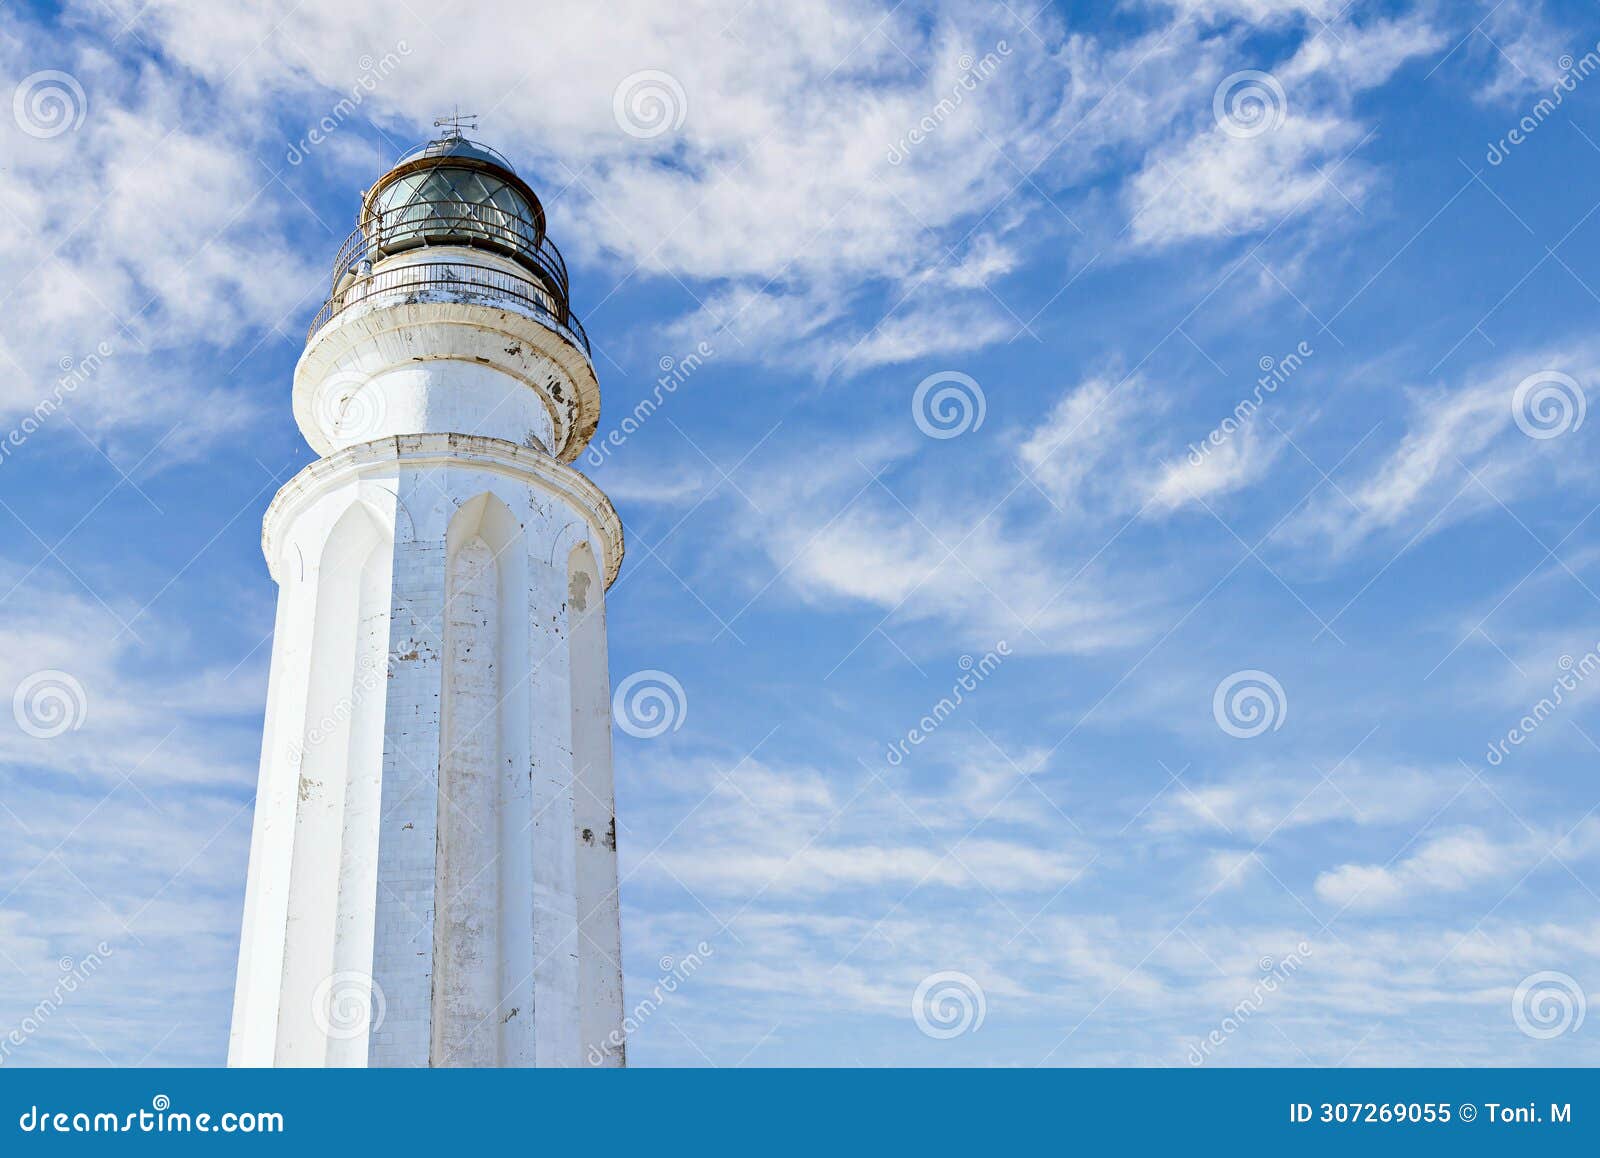 views of the cape trafalgar lighthouse, cadiz